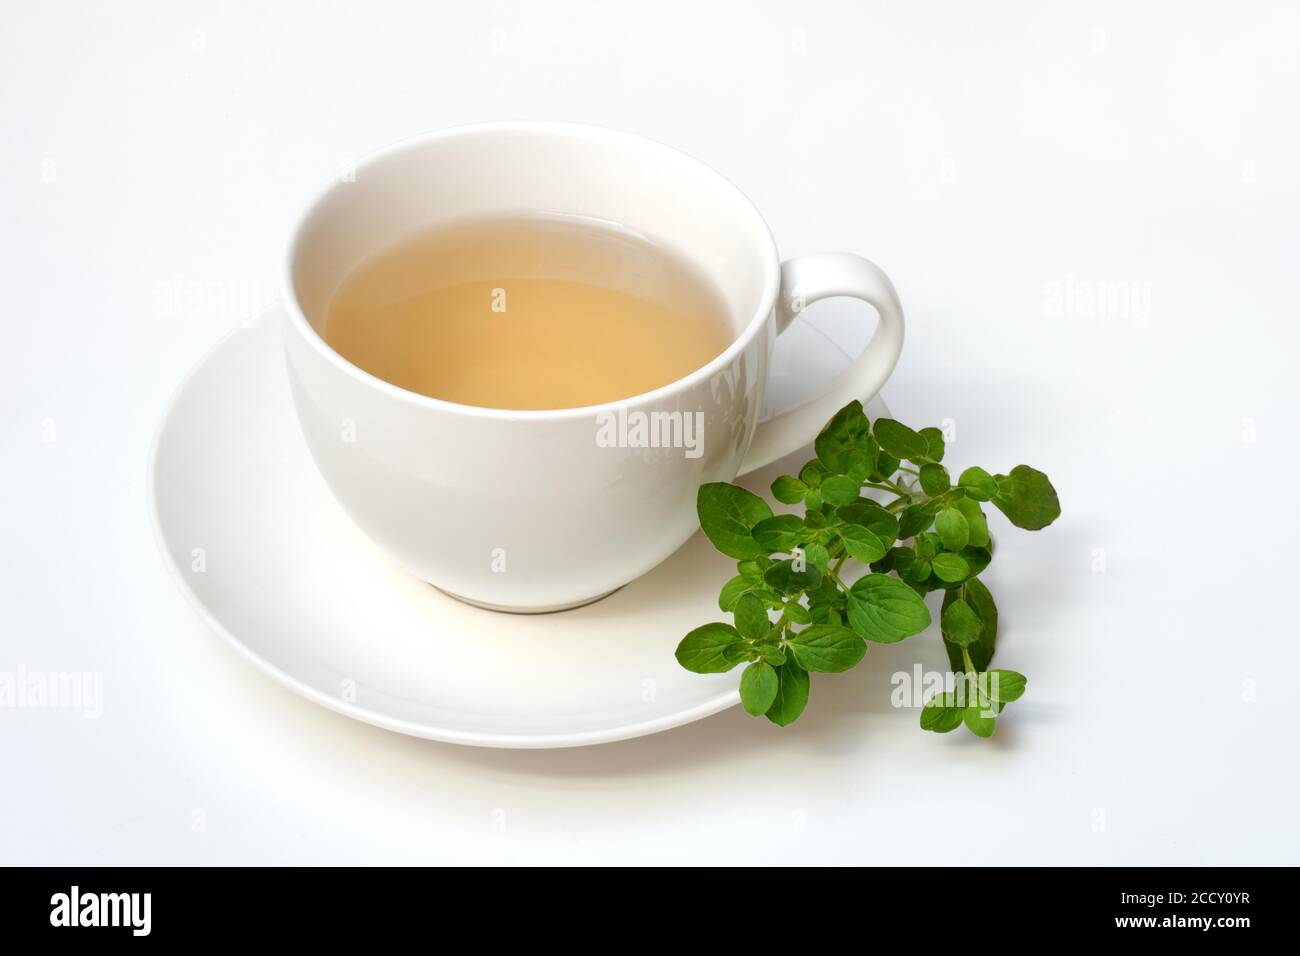 Thé d'origan en tasse et feuilles d'origan fraîches, Allemagne Banque D'Images